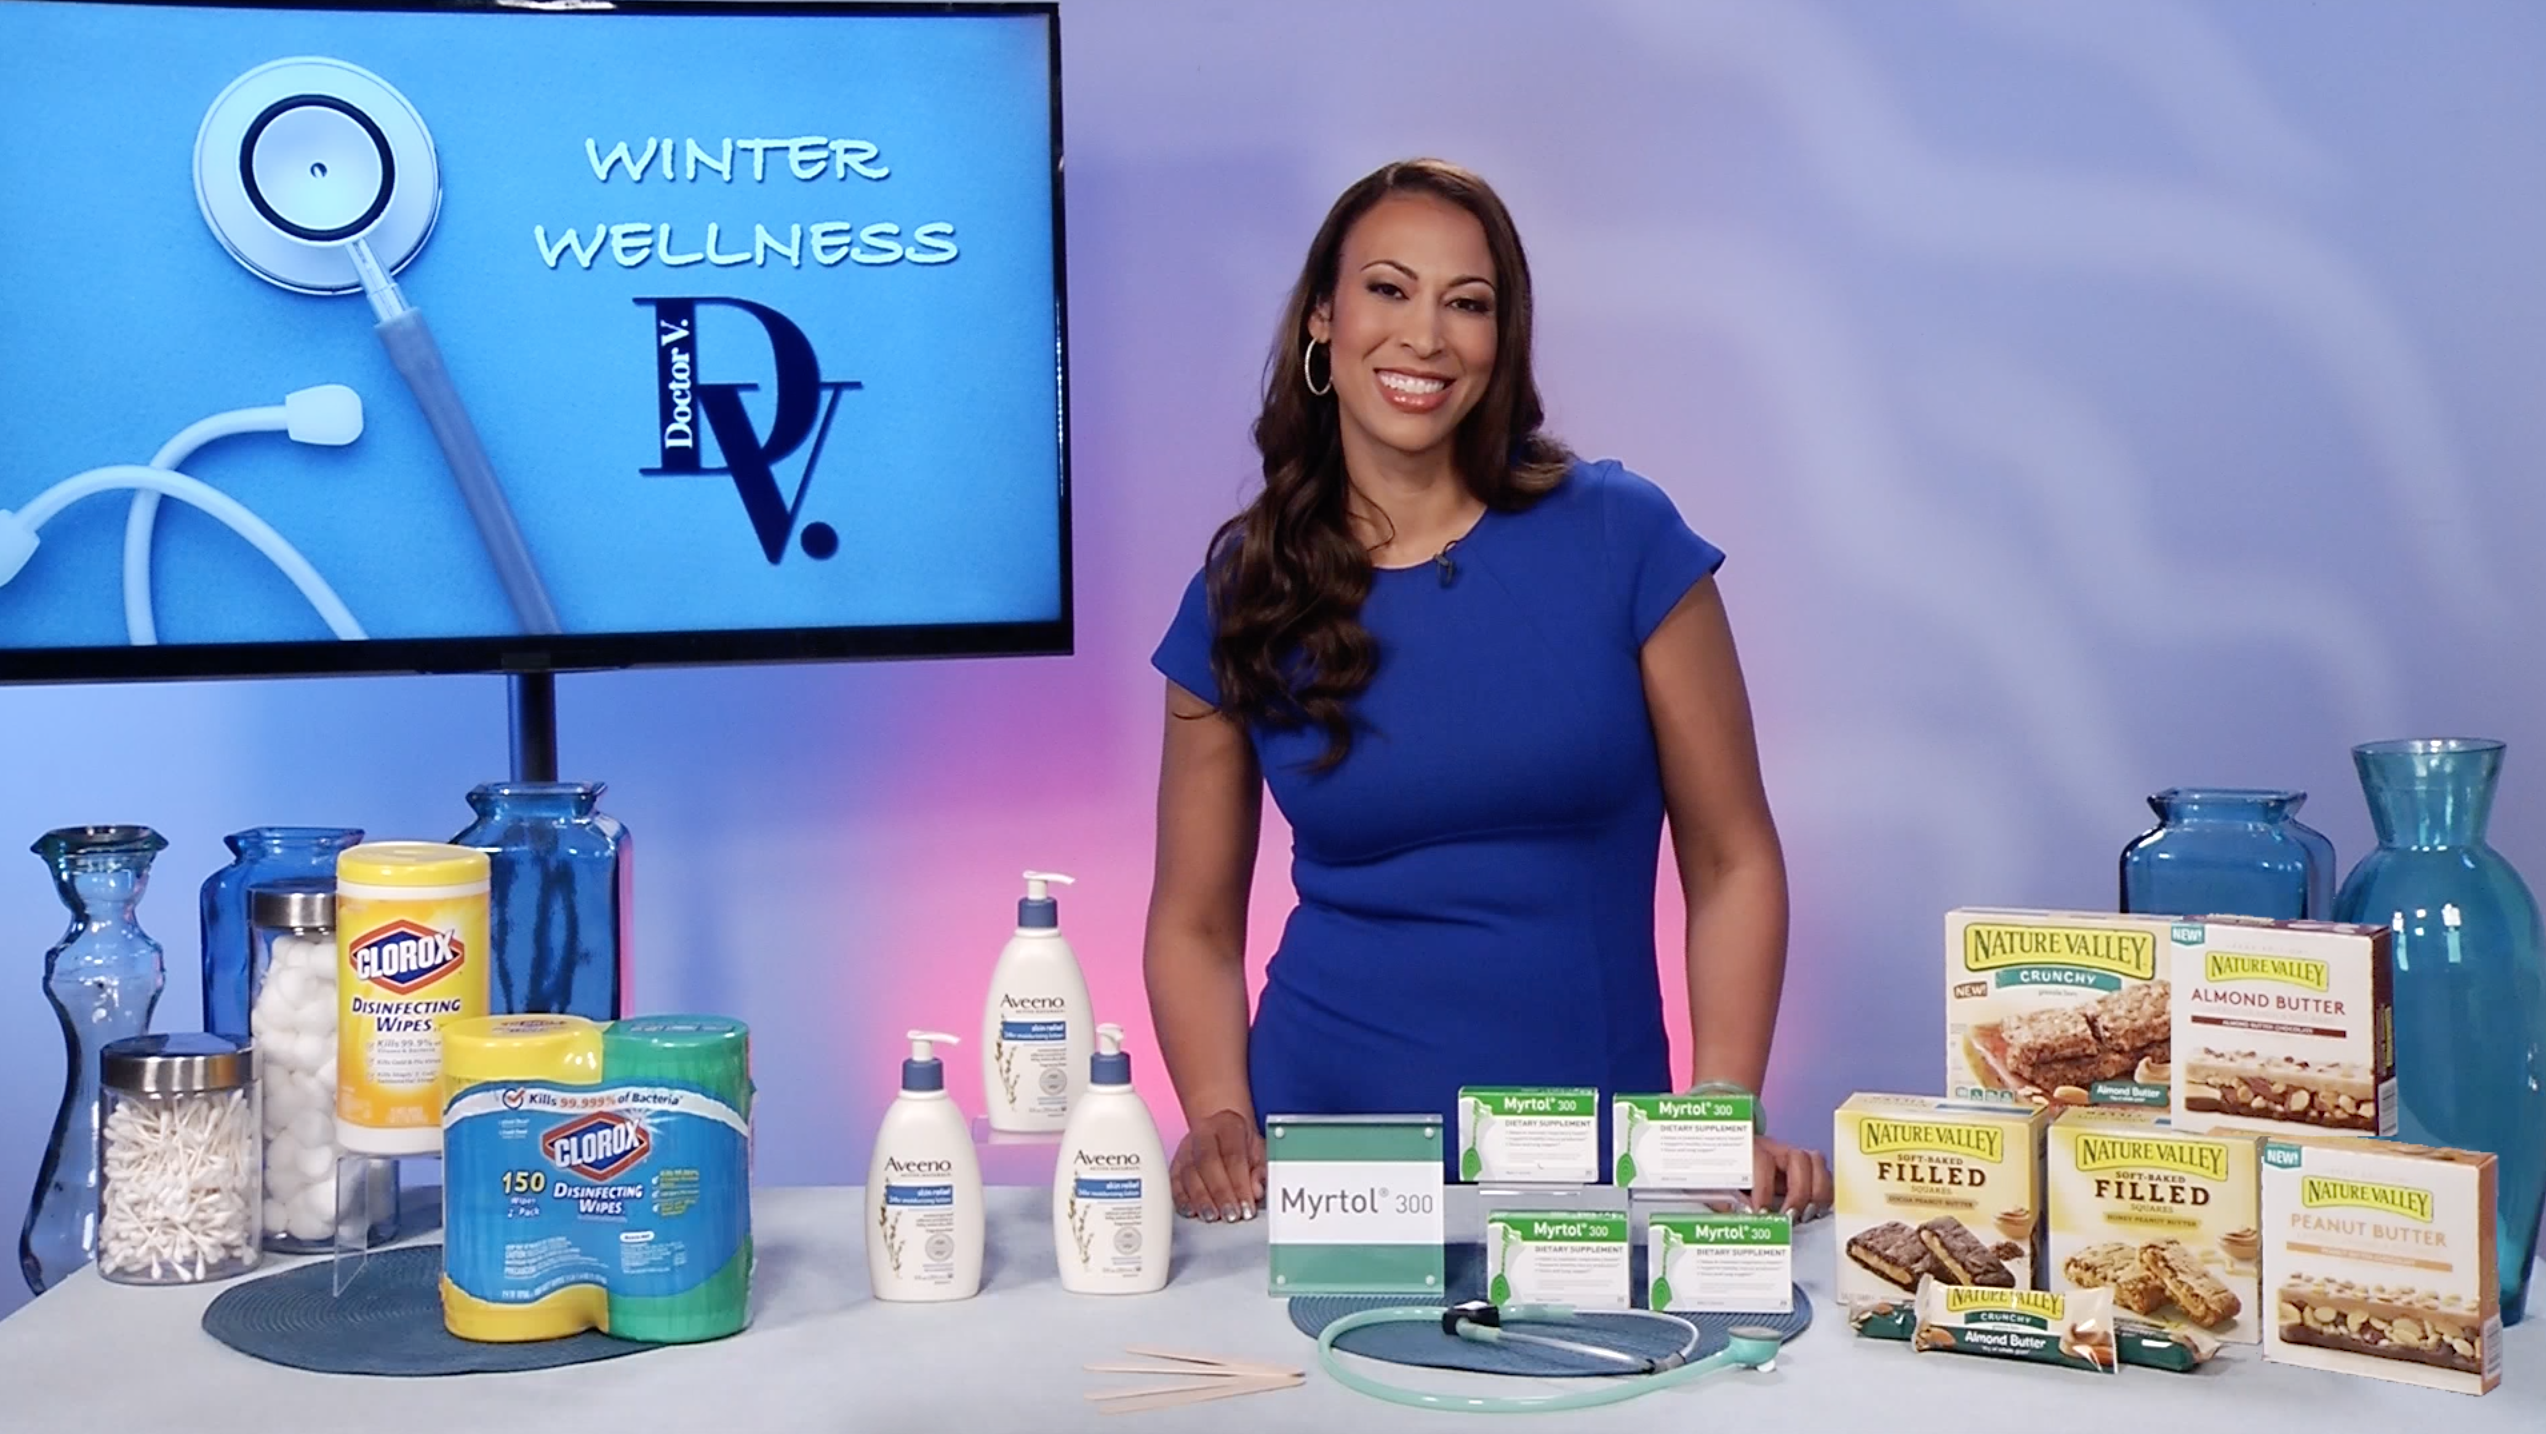 Winter Wellness Tips from TV Host Dr V